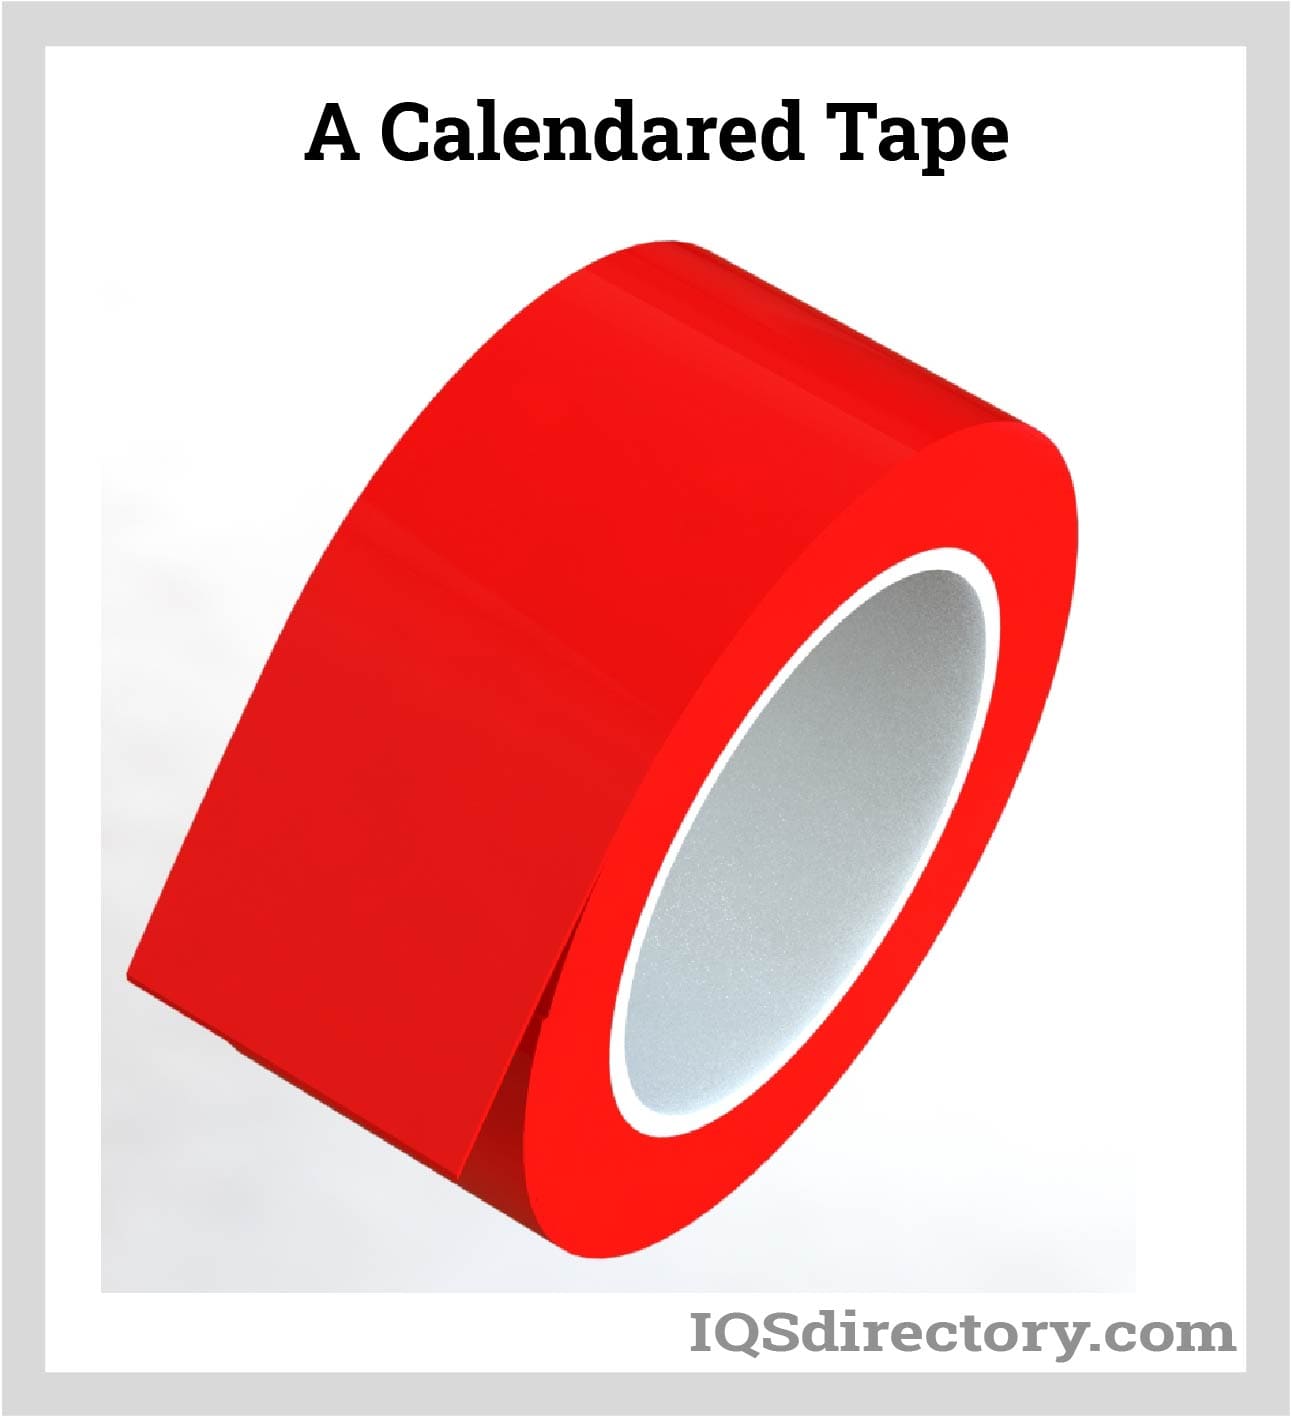  A Calendared Tape